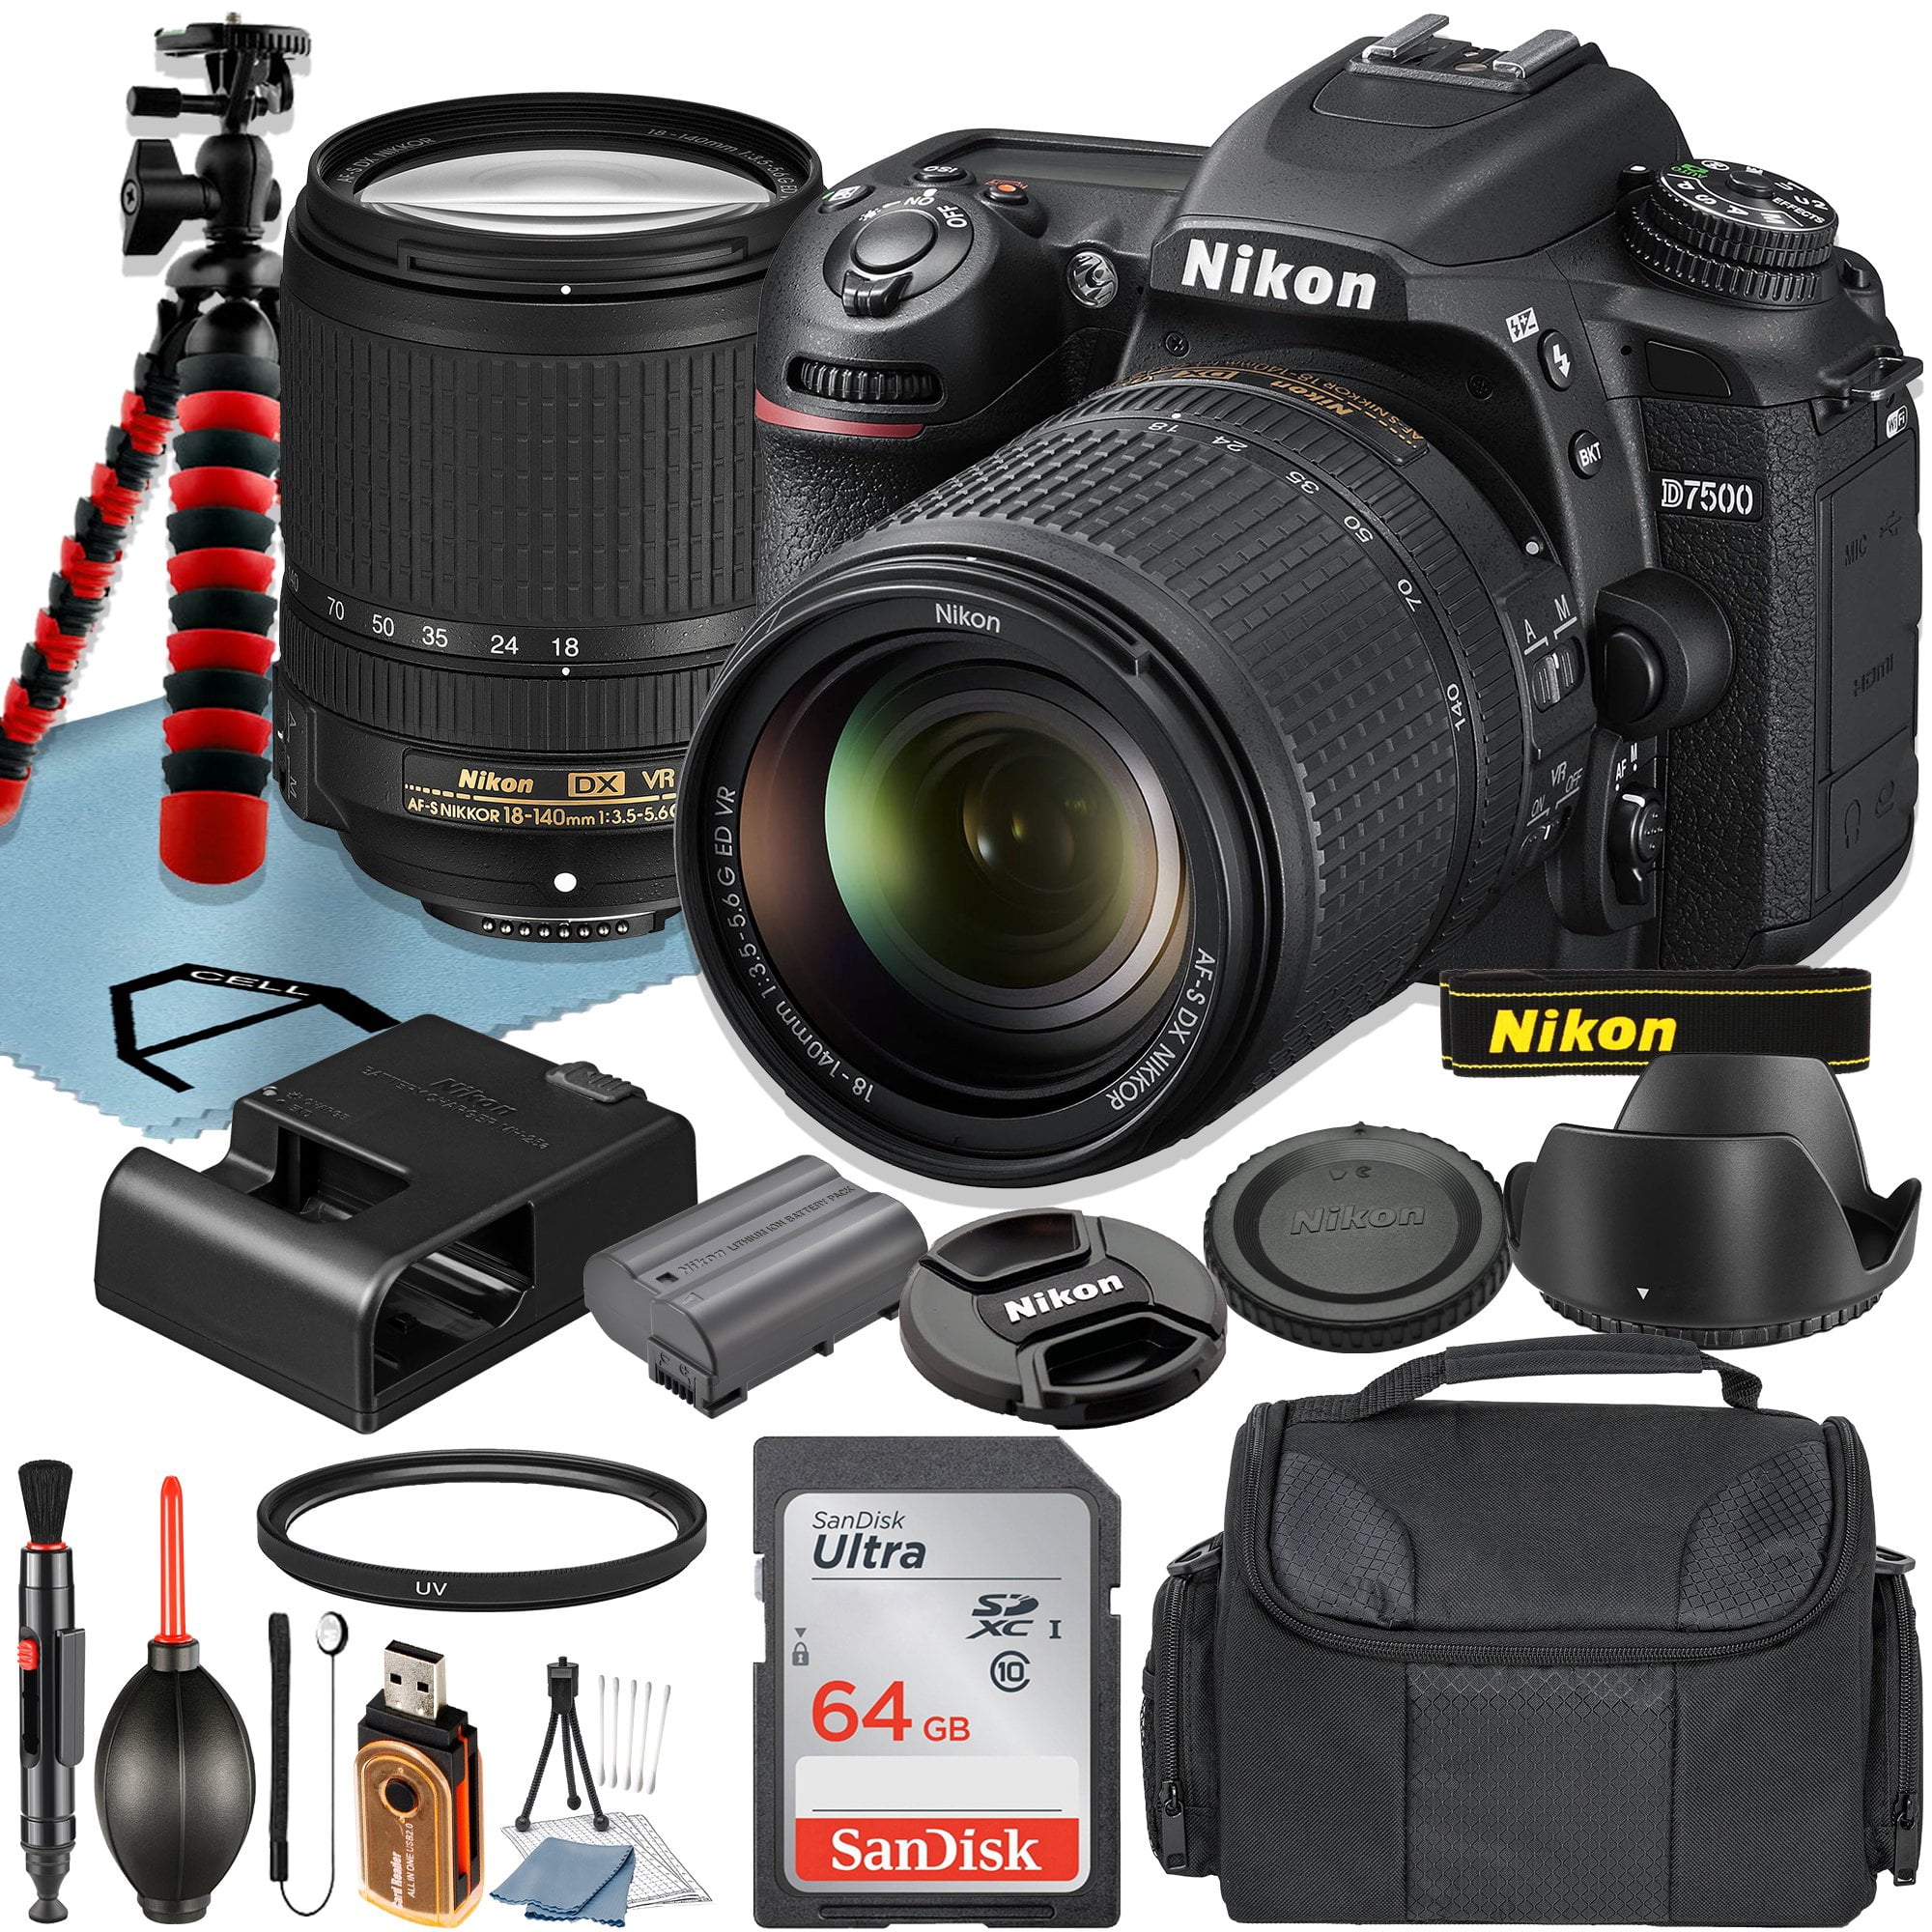 Nikon D7500 DSLR Camera with AF-S 18-140mm VR Lens + SanDisk 64GB